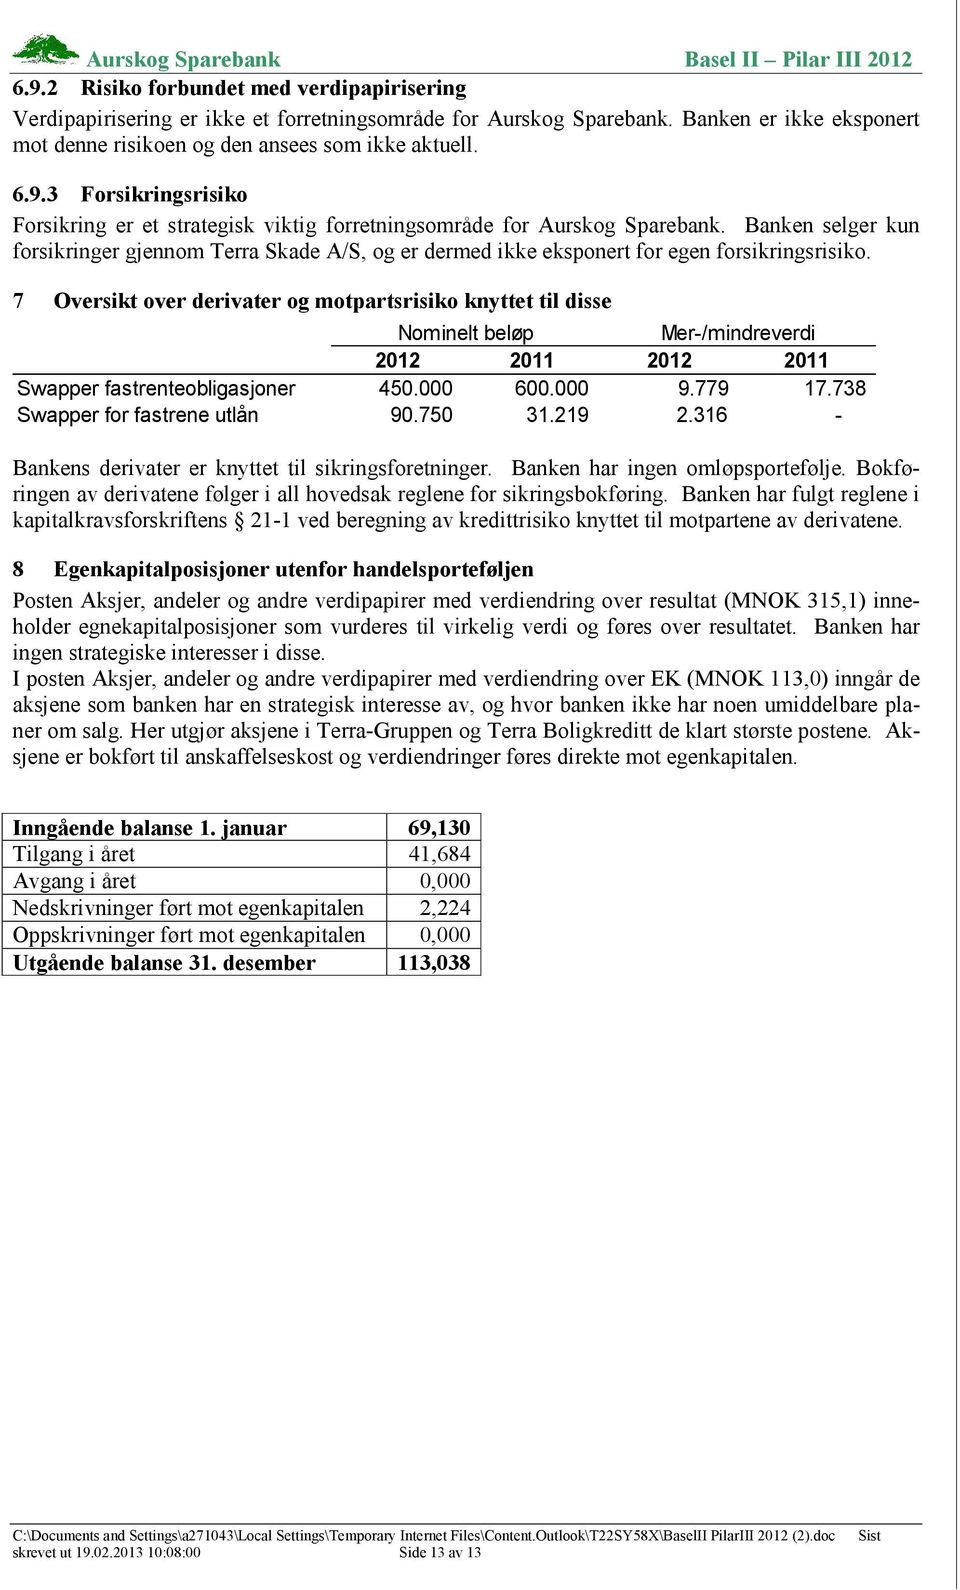 7 Oversikt over derivater og motpartsrisiko knyttet til disse Nominelt beløp Mer-/mindreverdi 2012 2011 2012 2011 Swapper fastrenteobligasjoner 450.000 600.000 9.779 17.